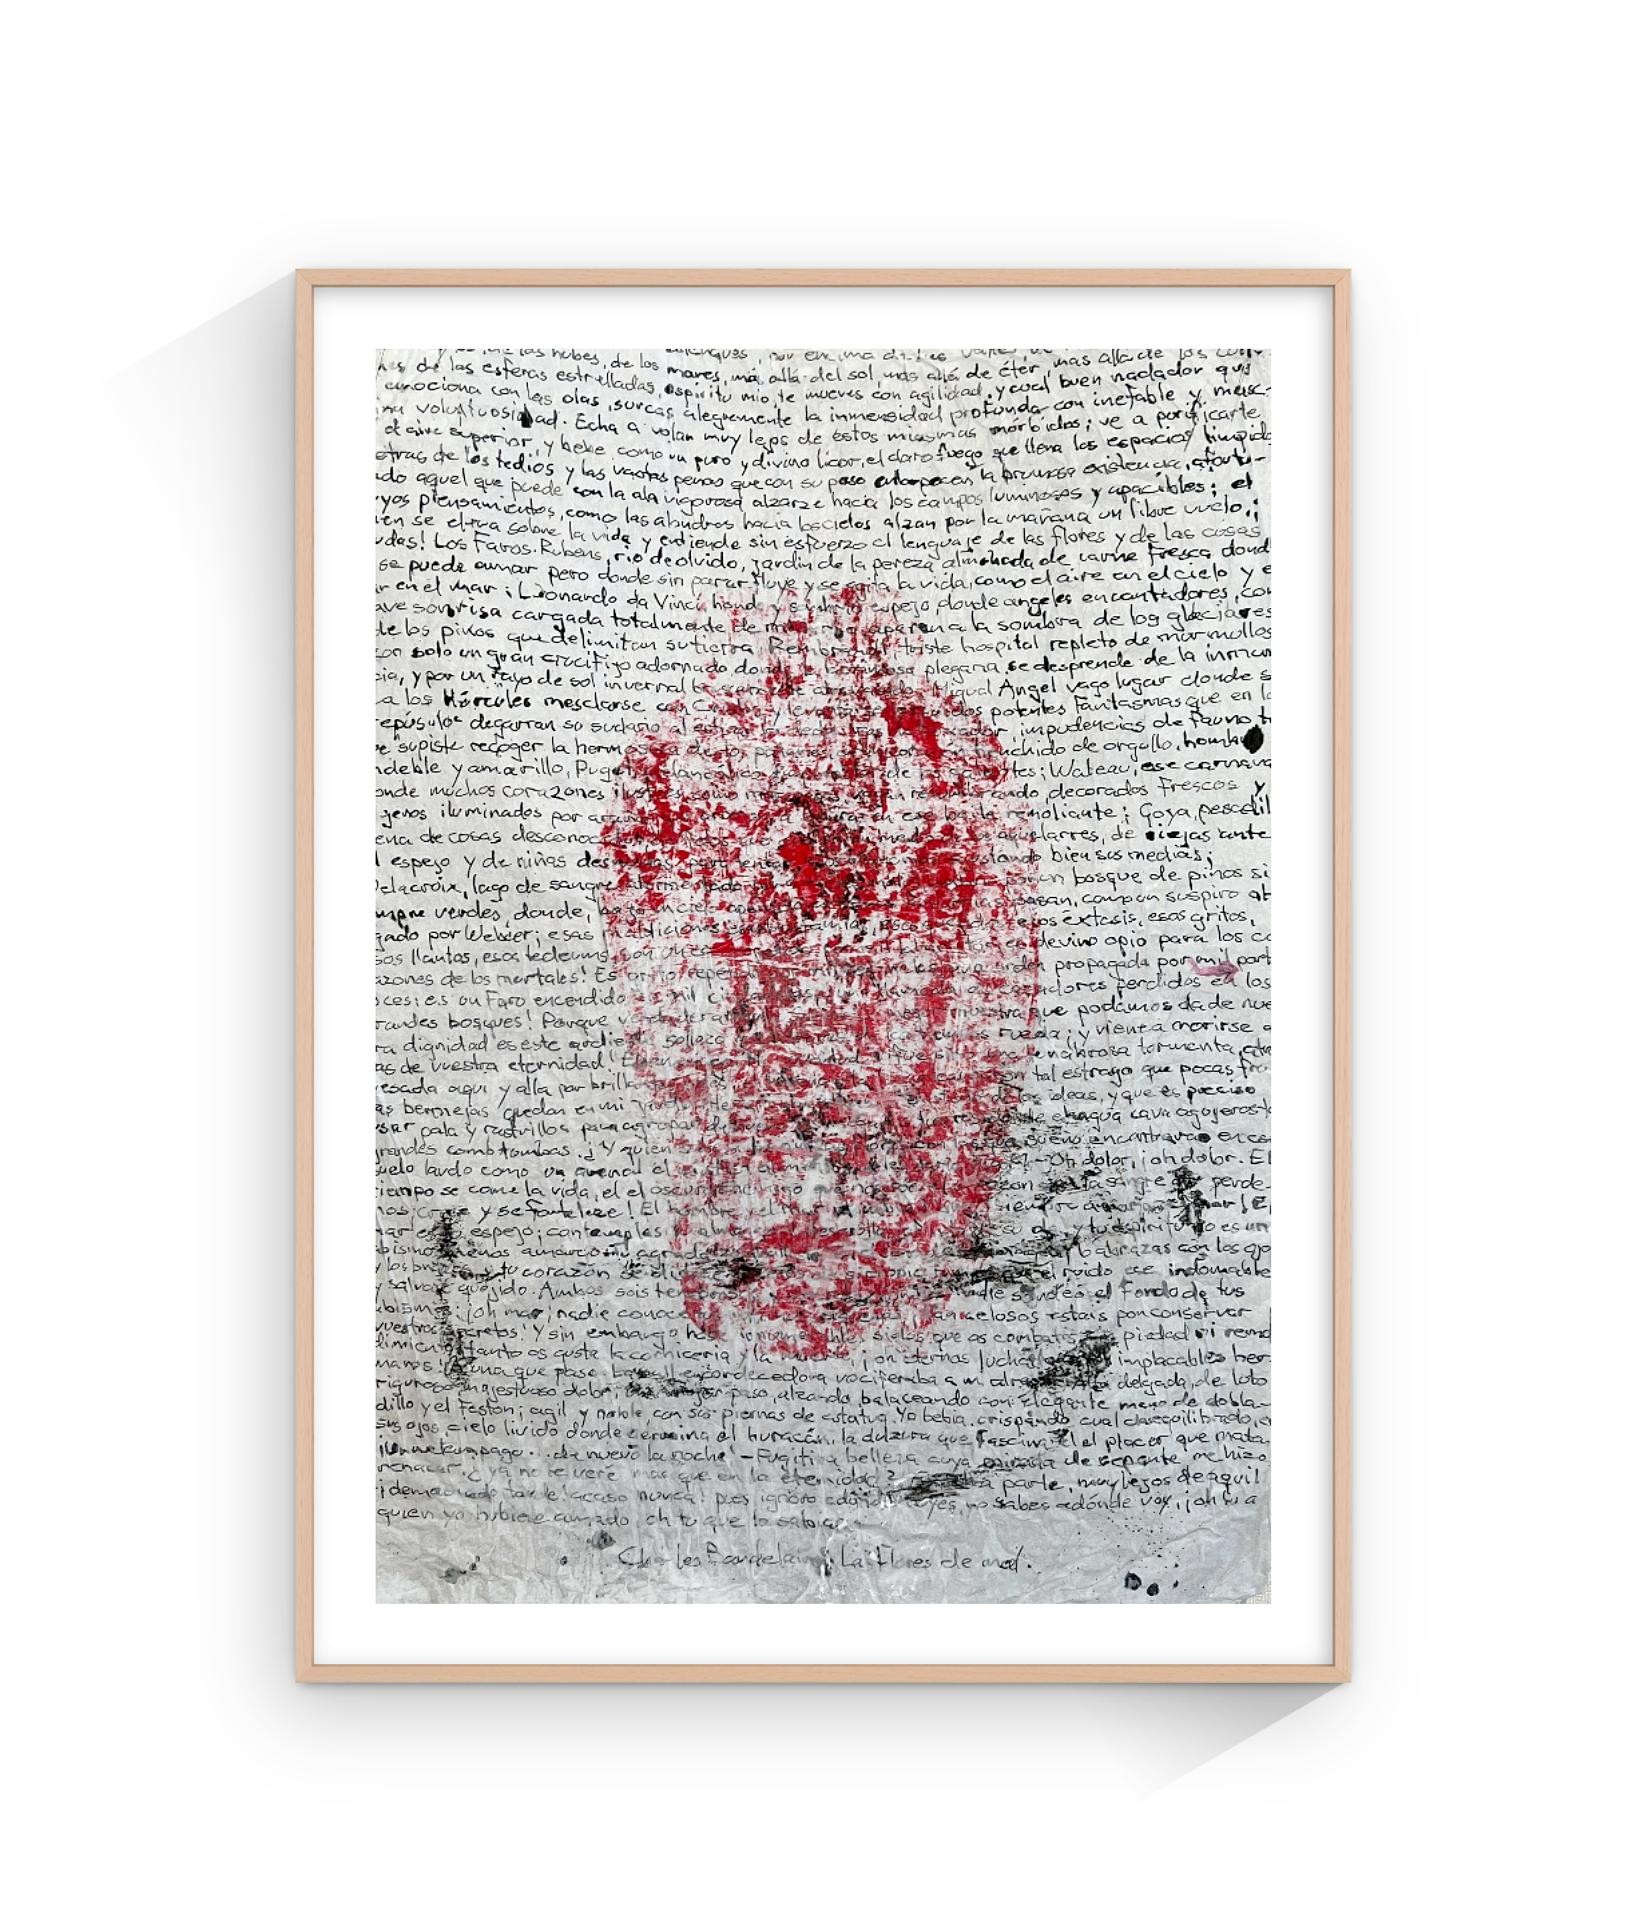 « 365 Vessels », technique mixte sur papier blanc tissu, minimaliste, 50 x 33 cm - Postmoderne Mixed Media Art par Peter Kramer